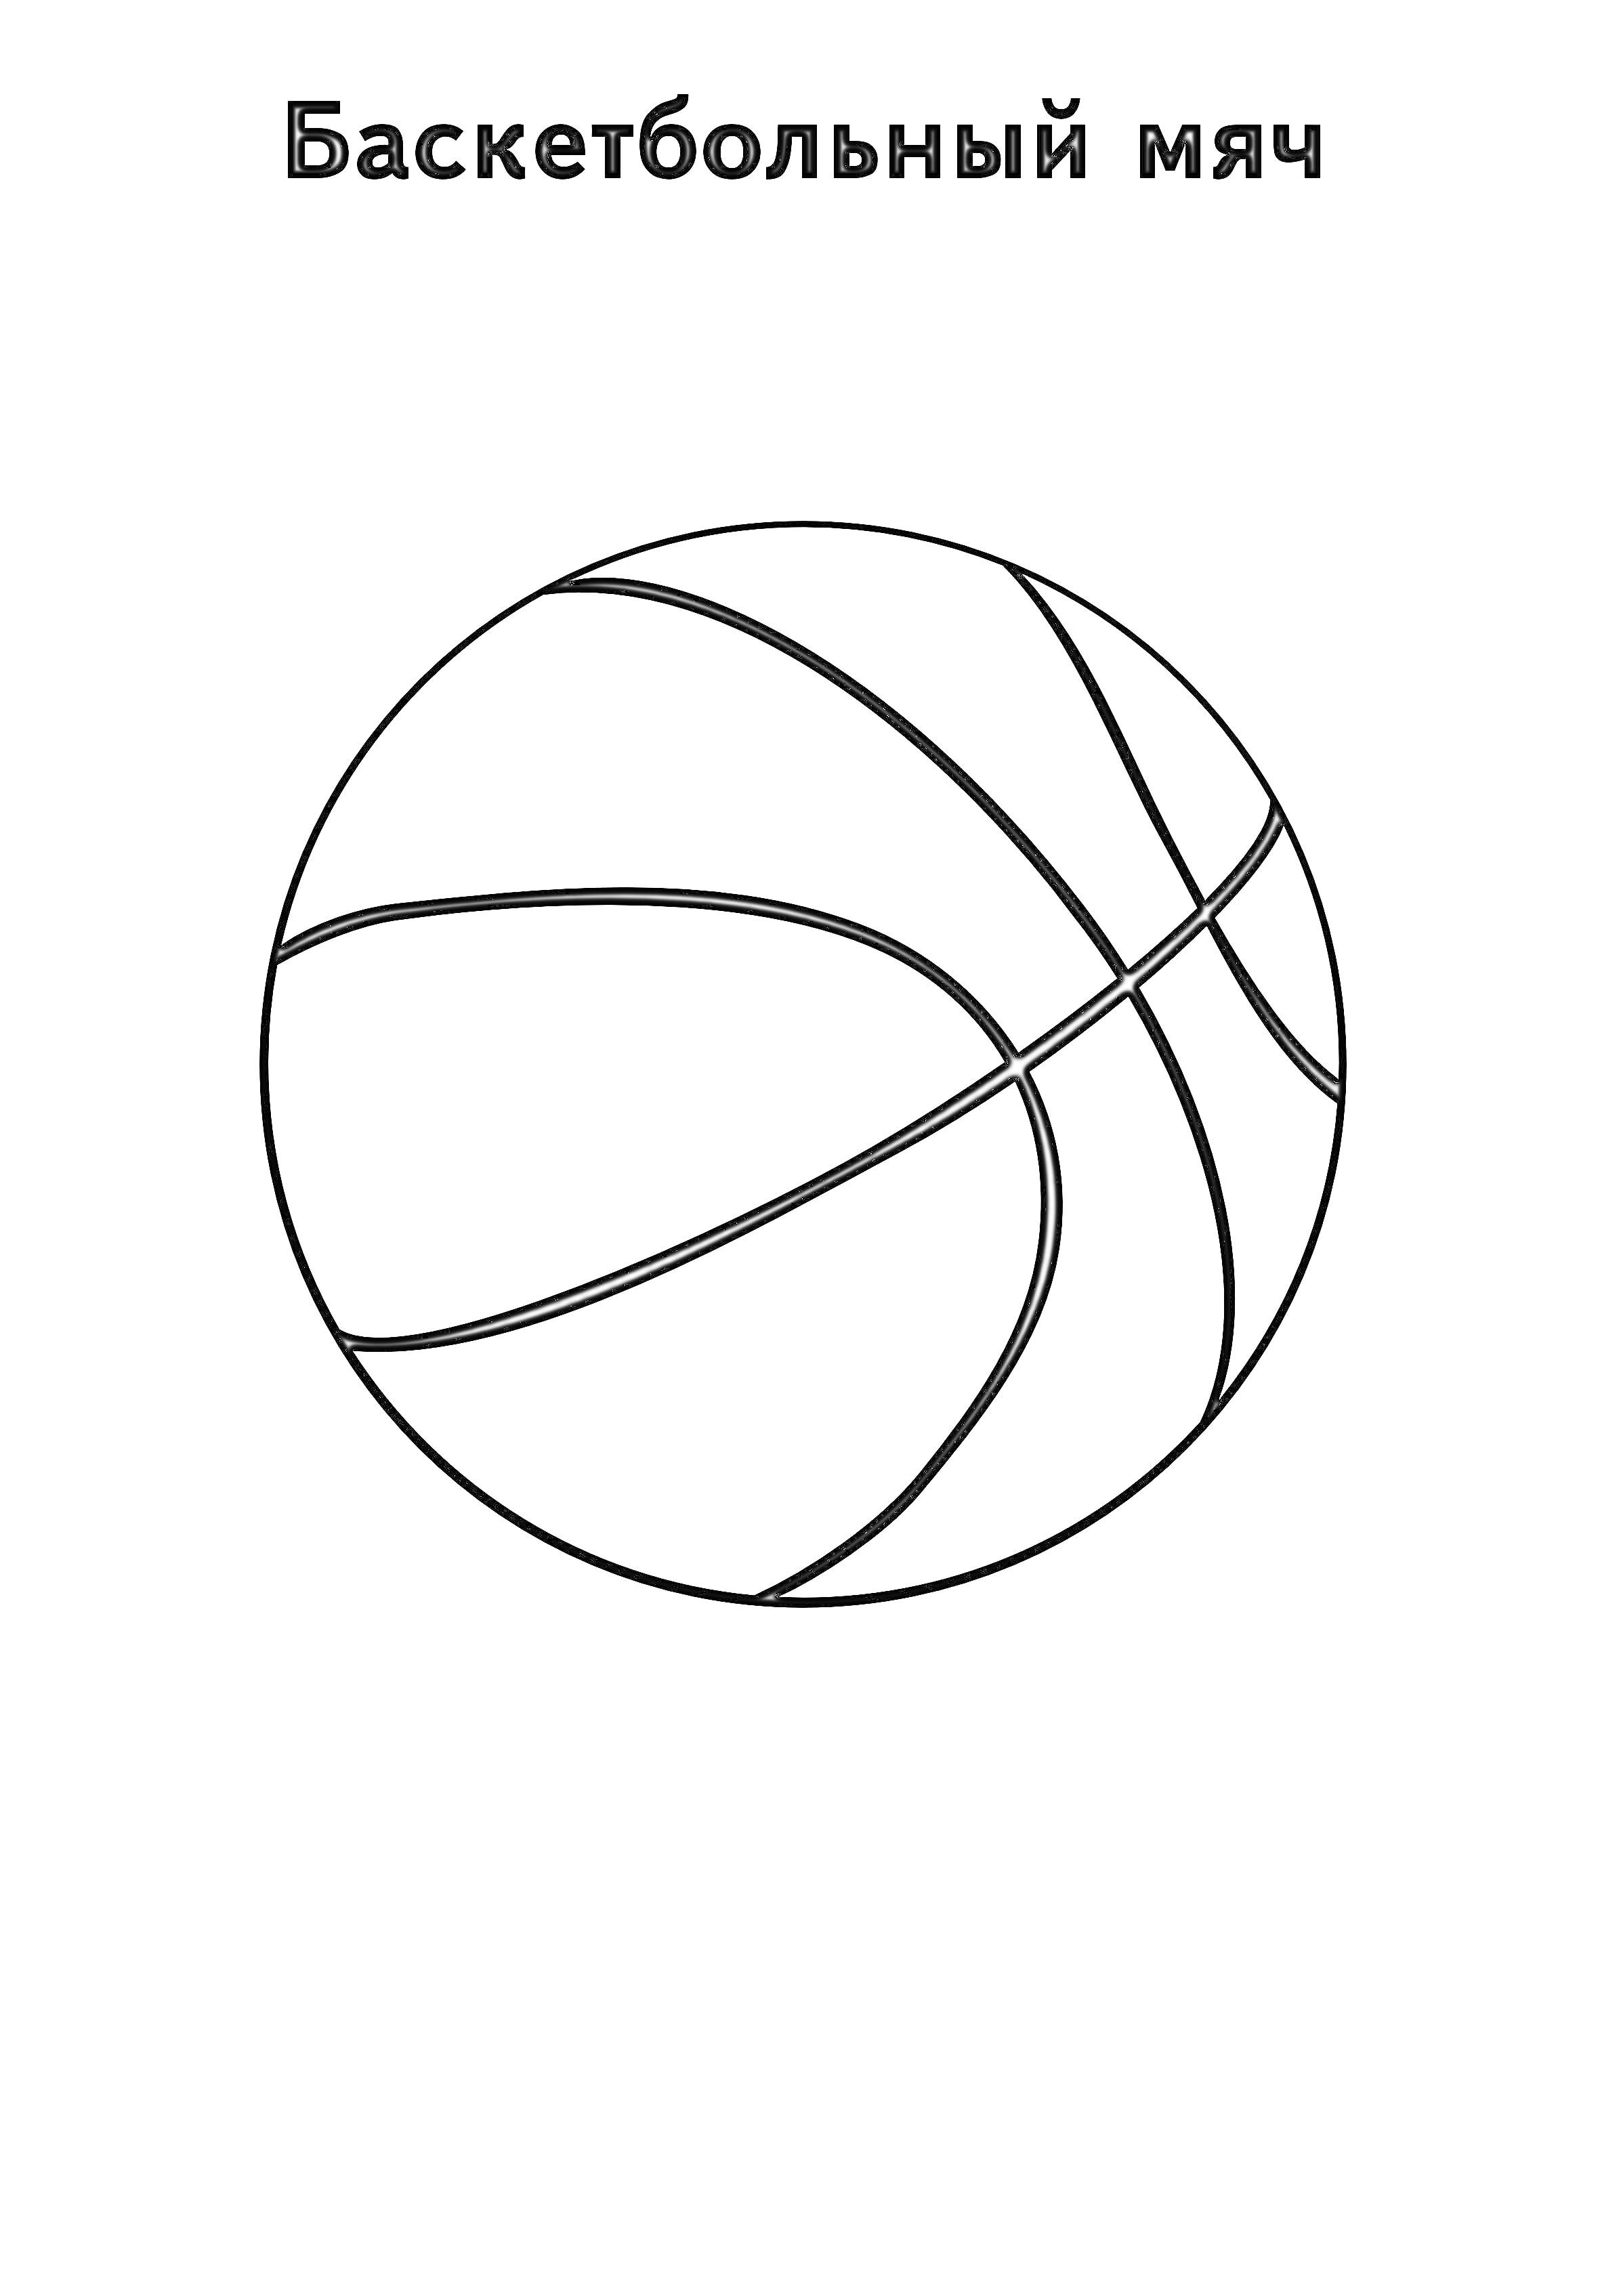 Баскетбольный мяч со схемой линий